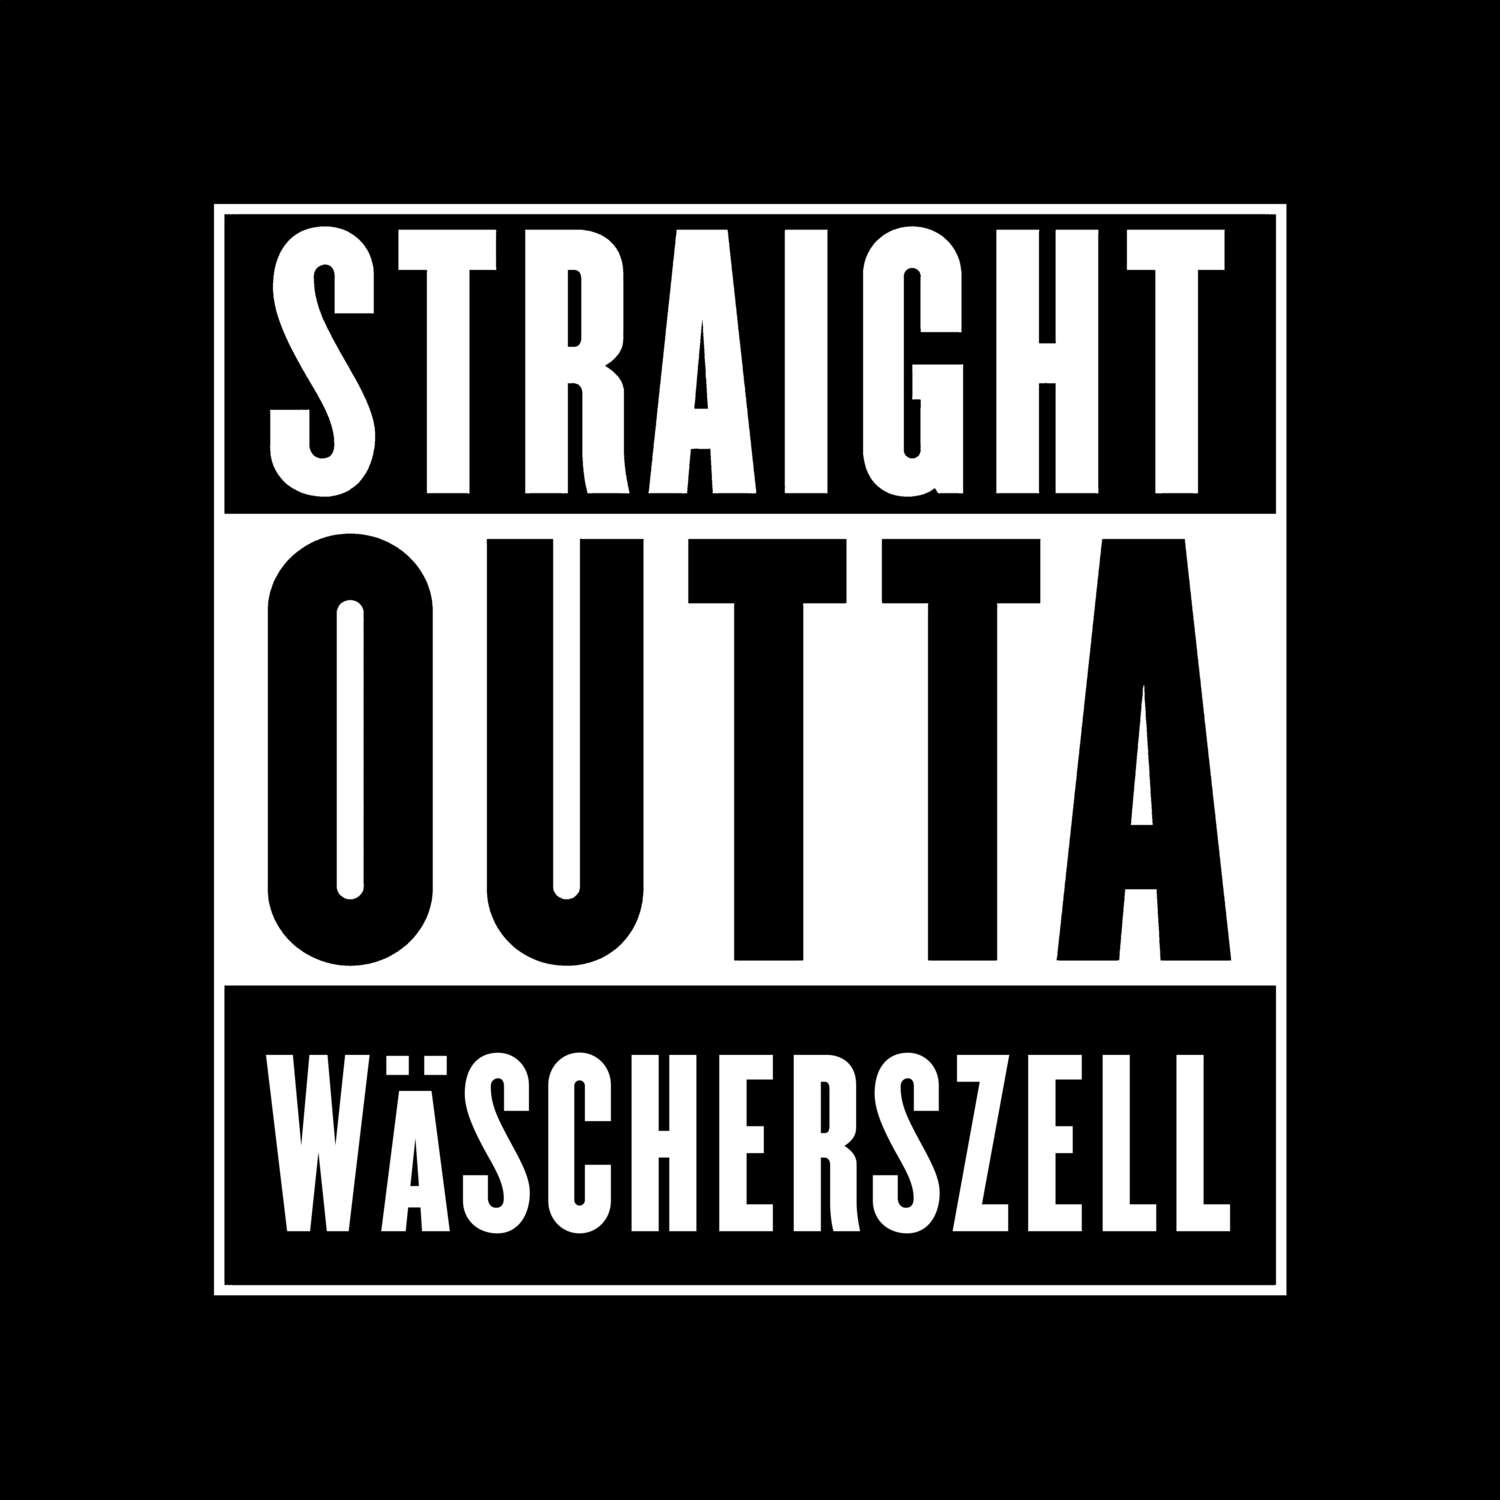 Wäscherszell T-Shirt »Straight Outta«